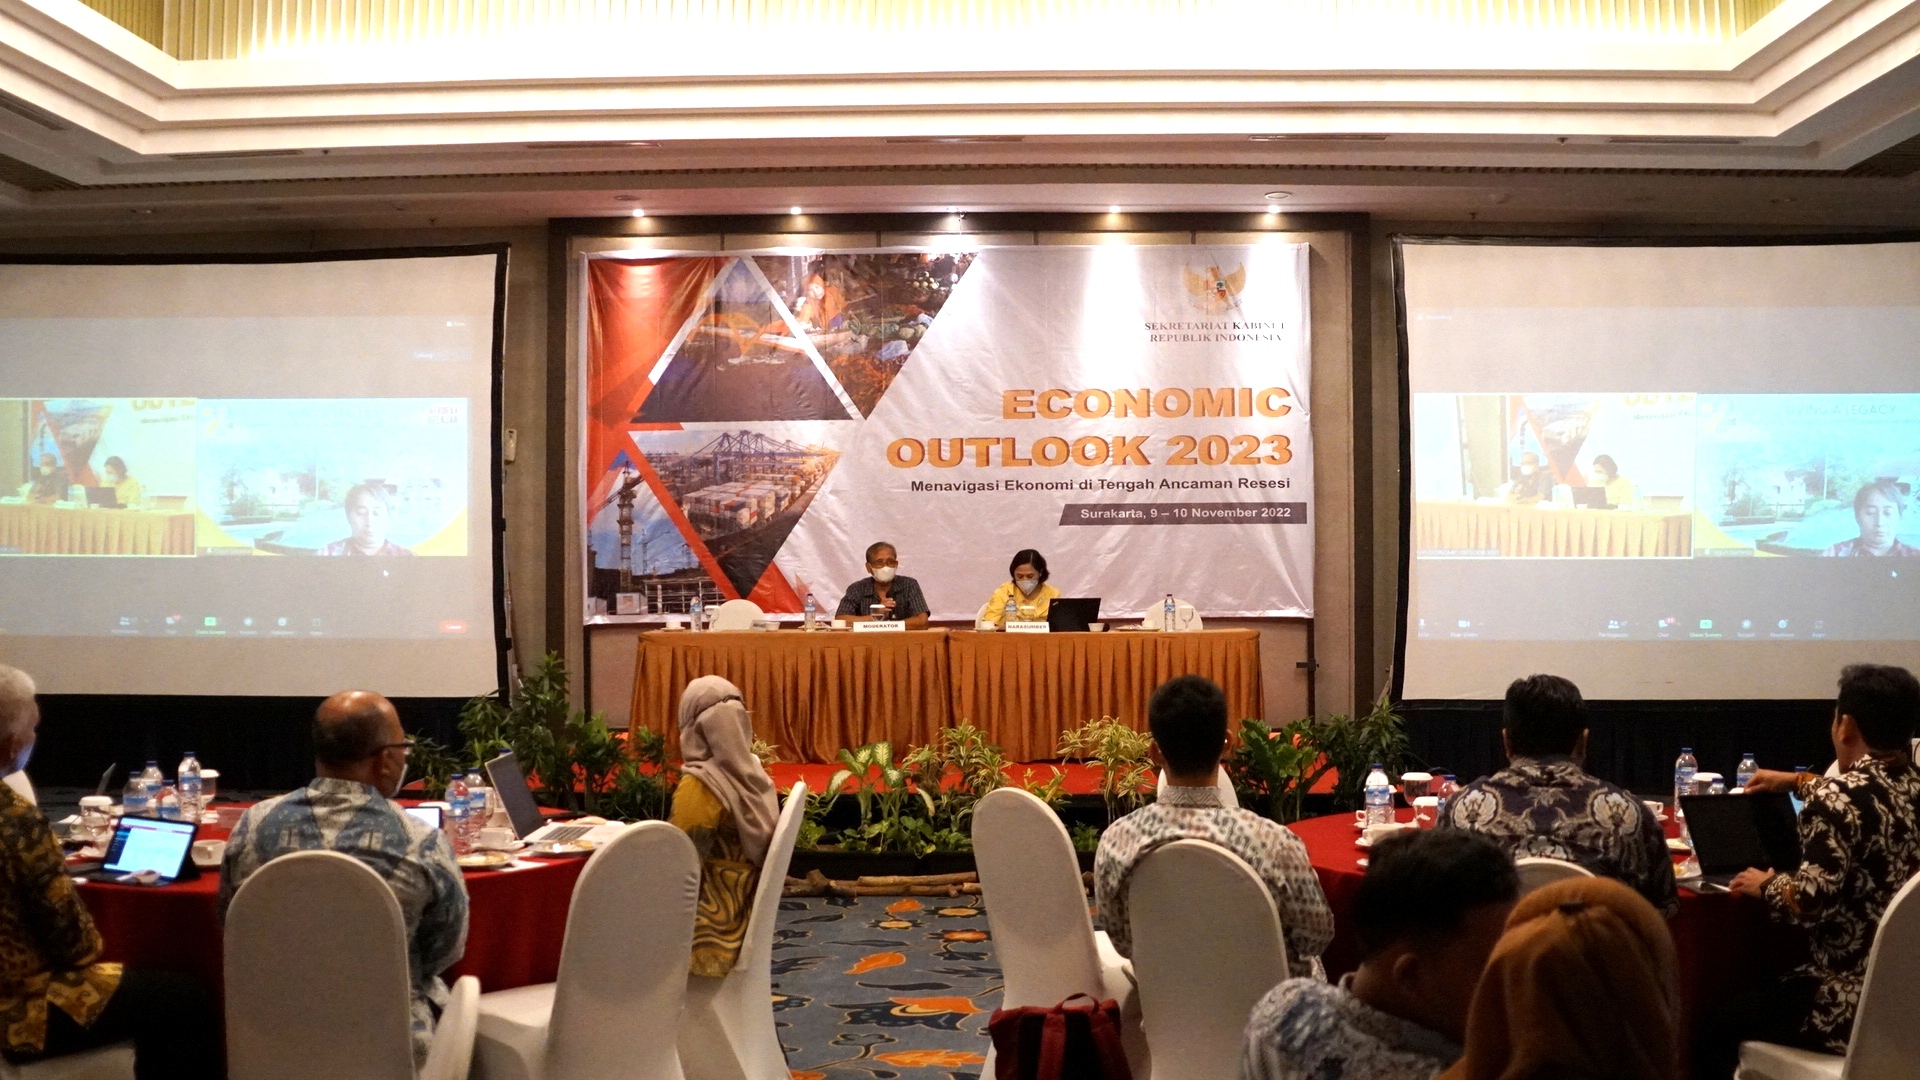 Navigasi Ekonomi di Tengah Ancaman Resesi, Setkab Gelar DKT Outlook Ekonomi Indonesia 2023